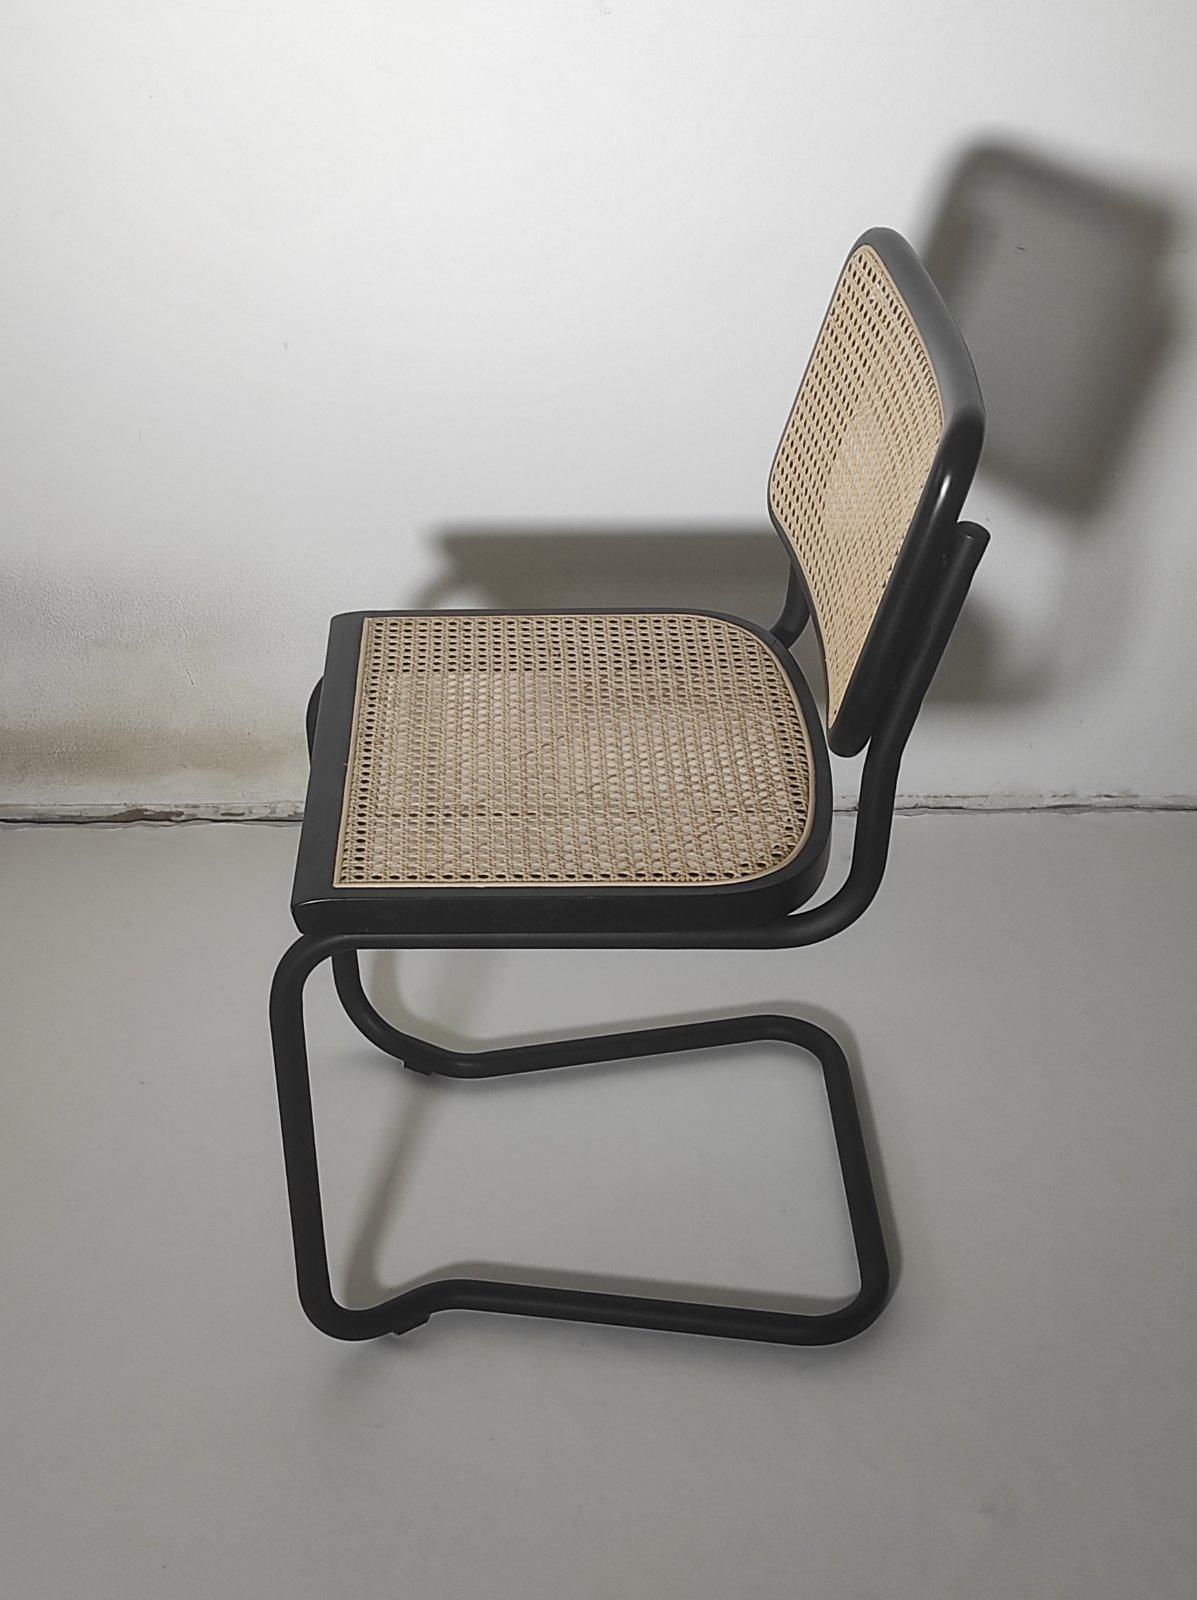 Fin du 20e siècle Affiche de chaise Cesca noire Marcel Breuer Italie années 1980 en vente